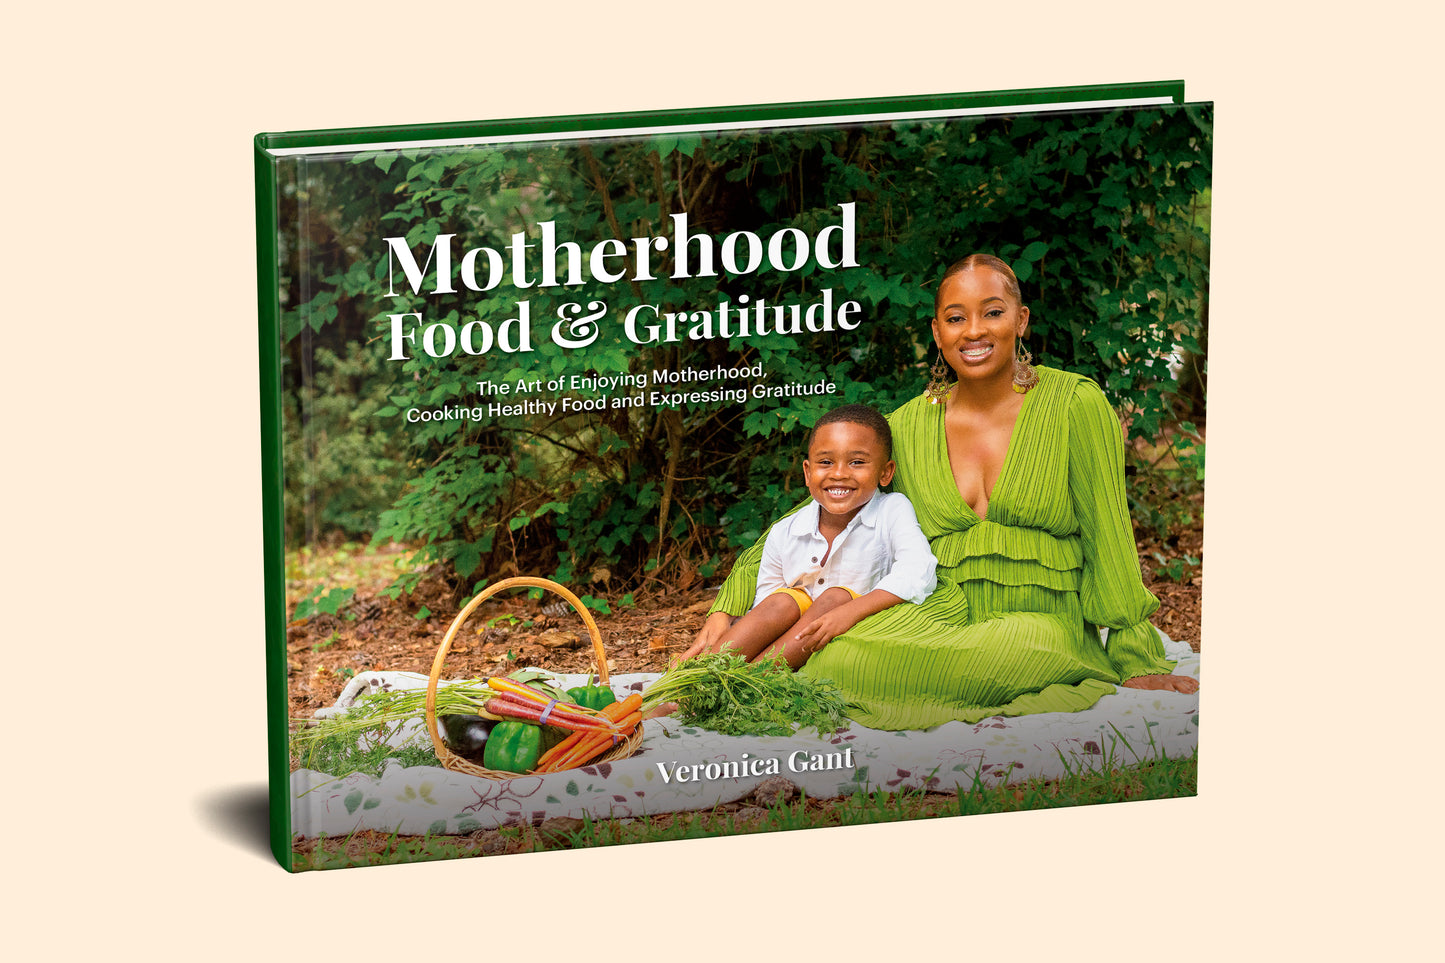 Motherhood Food & Gratitude Cookbook